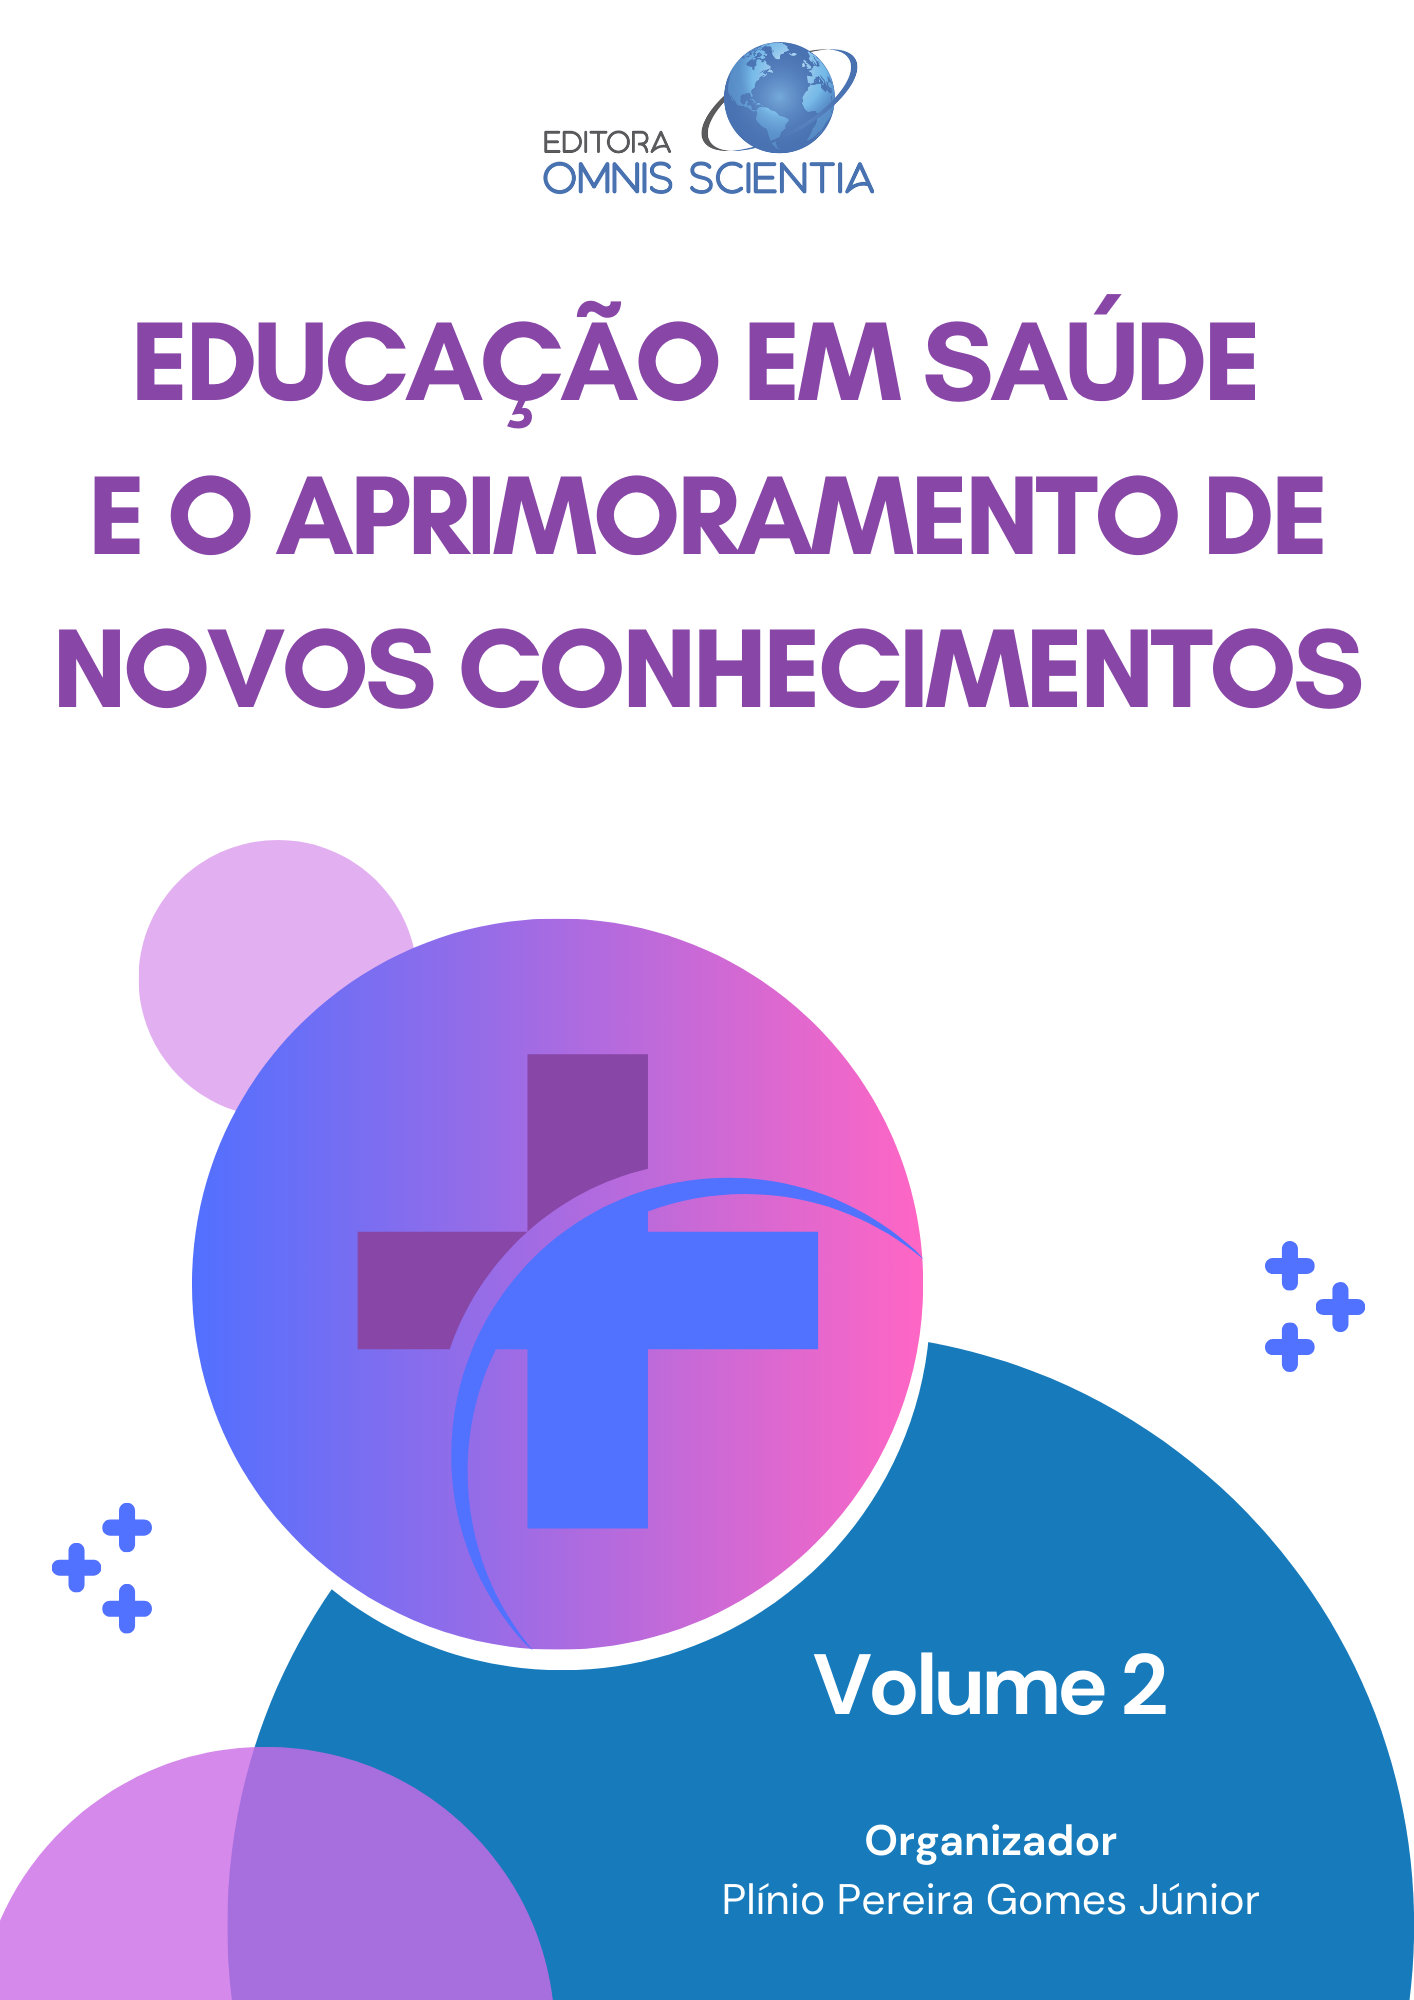 EDUCAÇÃO EM SAÚDE E O APRIMORAMENTO DE NOVOS CONHECIMENTOS, VOL 2